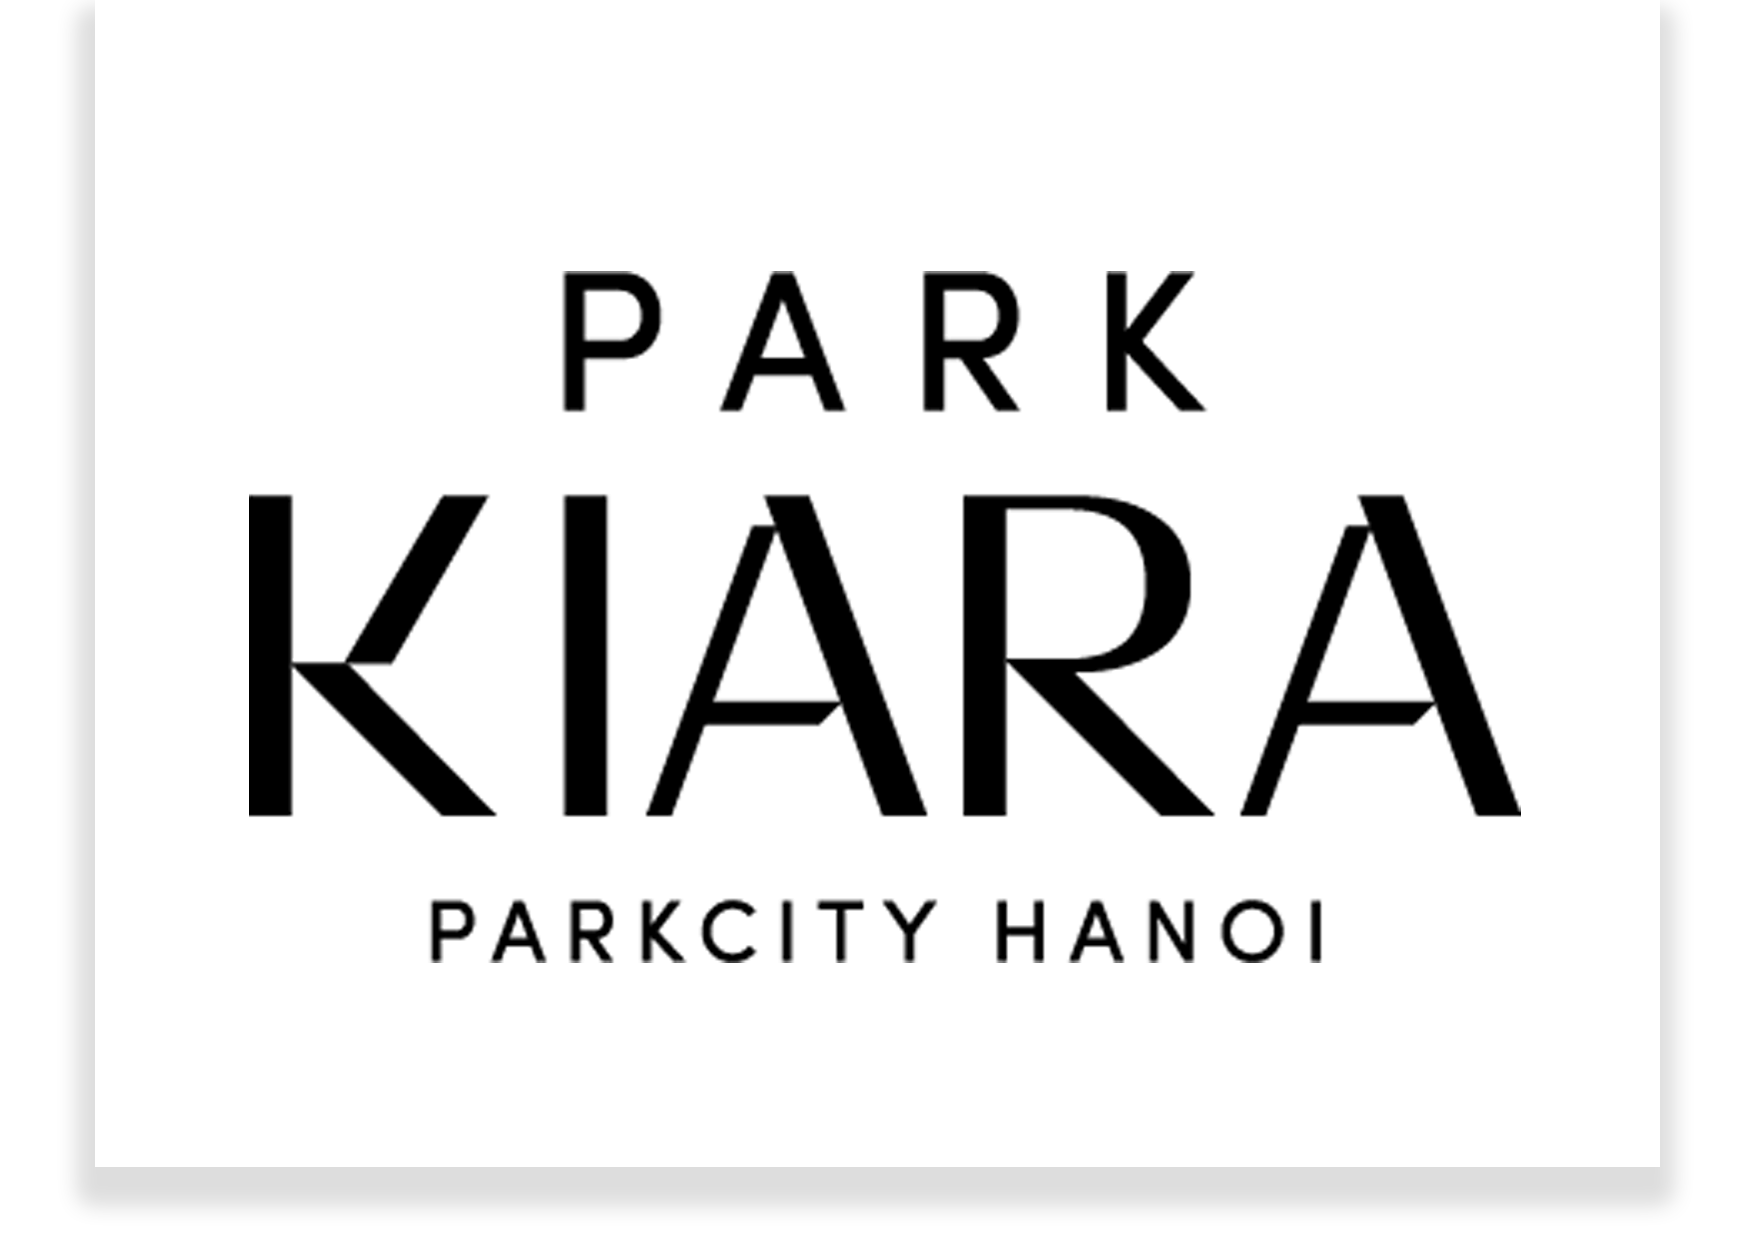 logo park kiara